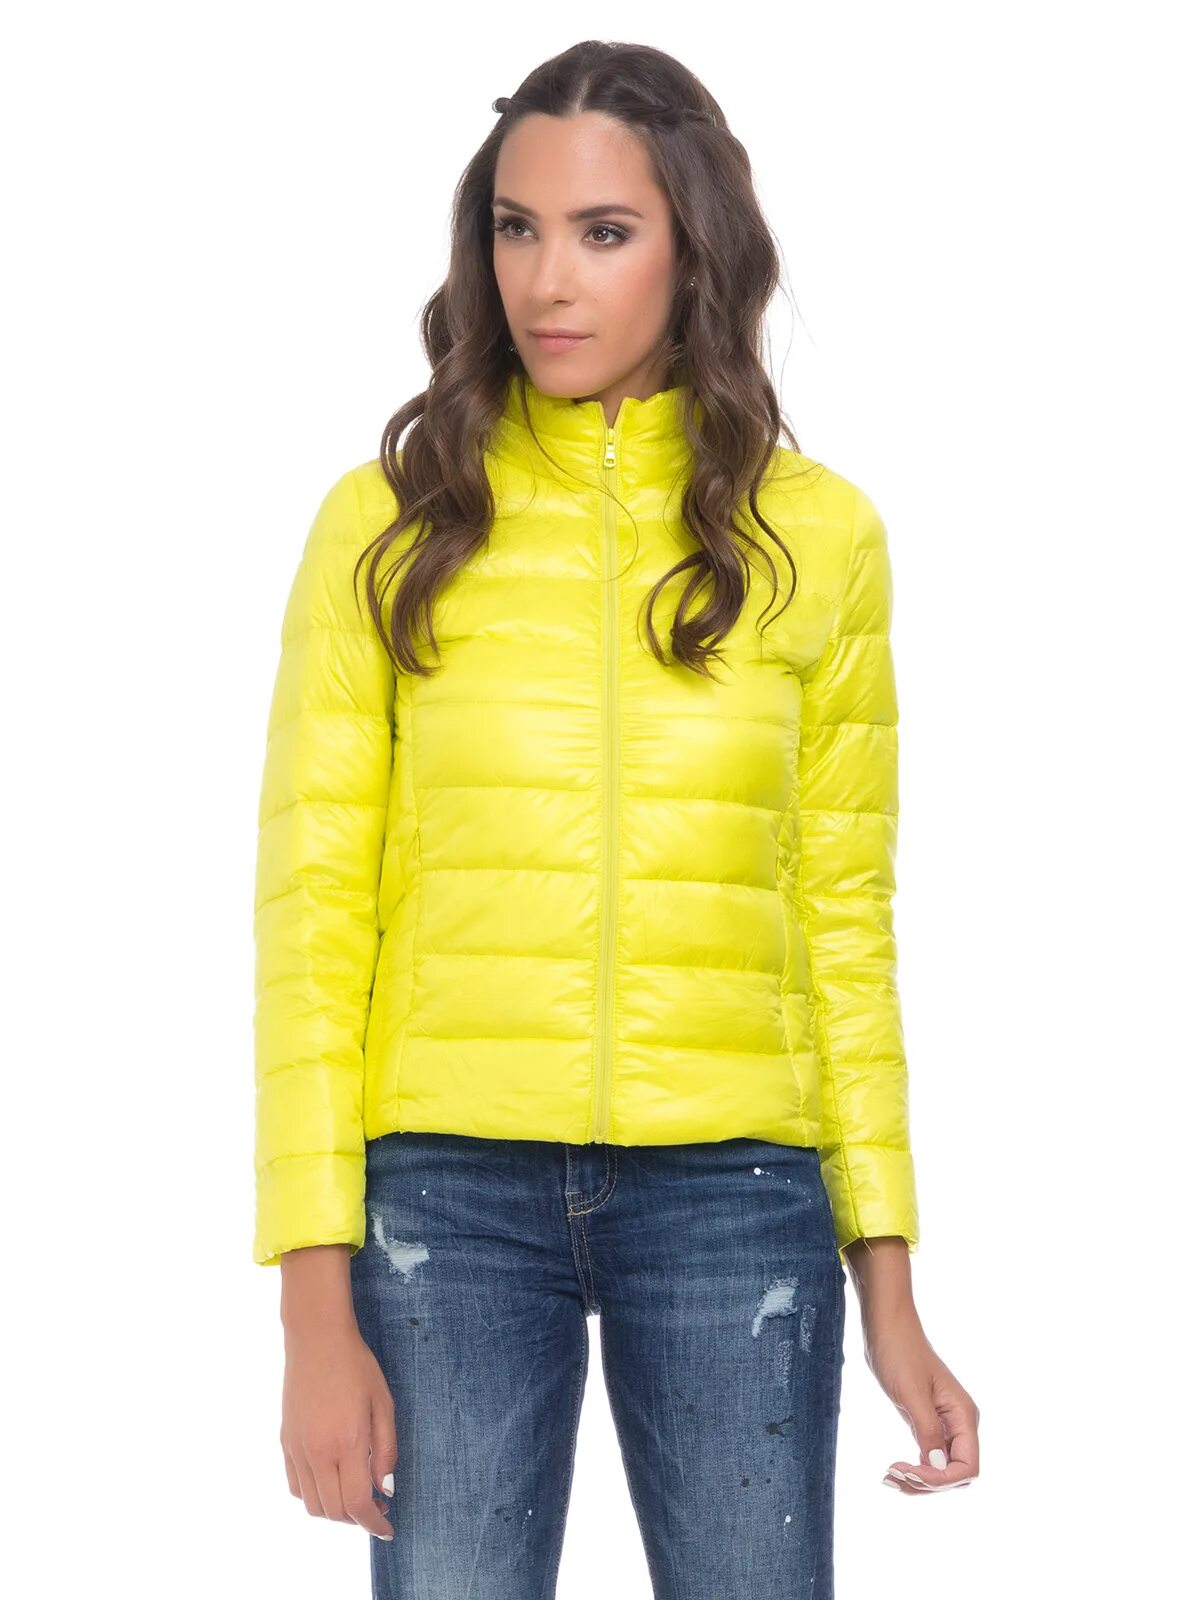 Лимонная кожаная куртка. Куртка лимонного цвета. Лимонная куртка женская. Куртка лимонного цвета женская. Пуховик лимонного цвета.